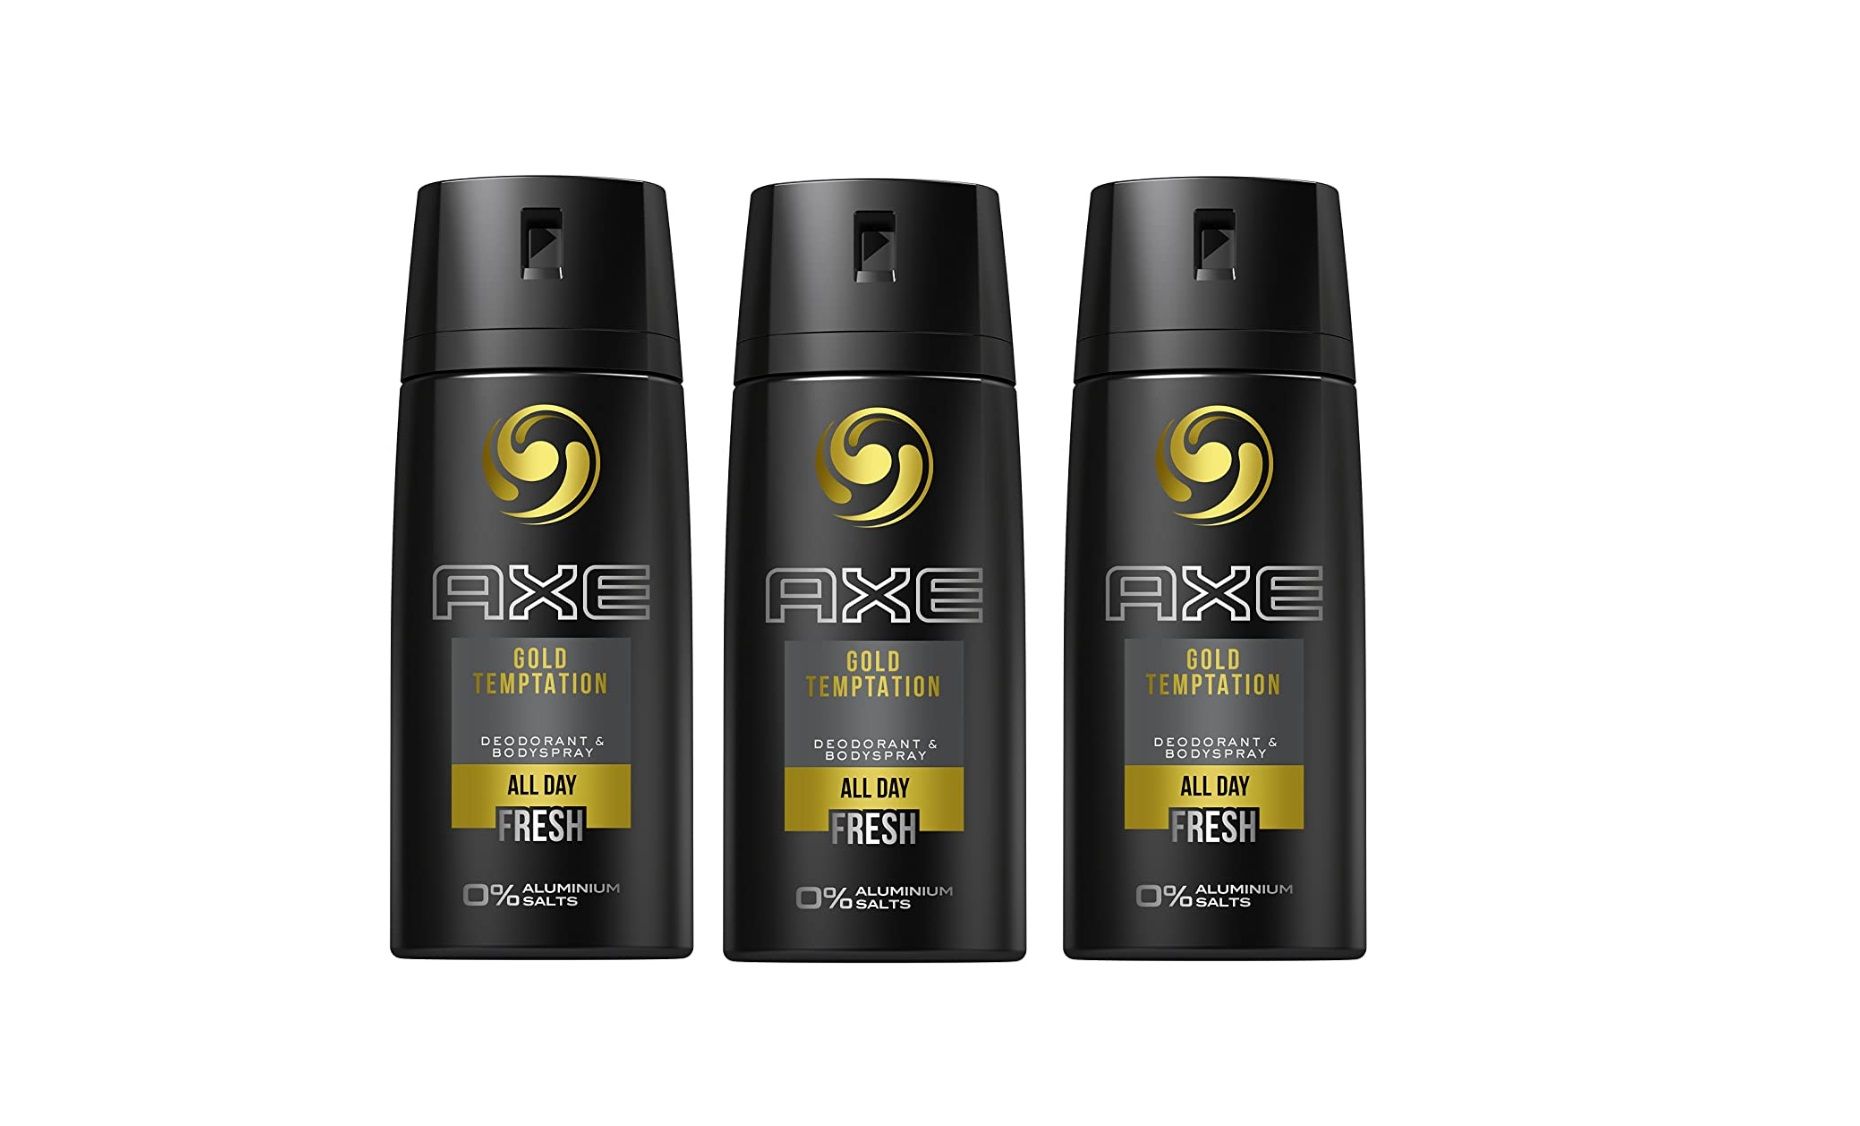 ¡Chollo! Pack de 3 desodorantes AXE Oro Temptation sin aluminio por sólo 6,75€ (antes 10,80€)